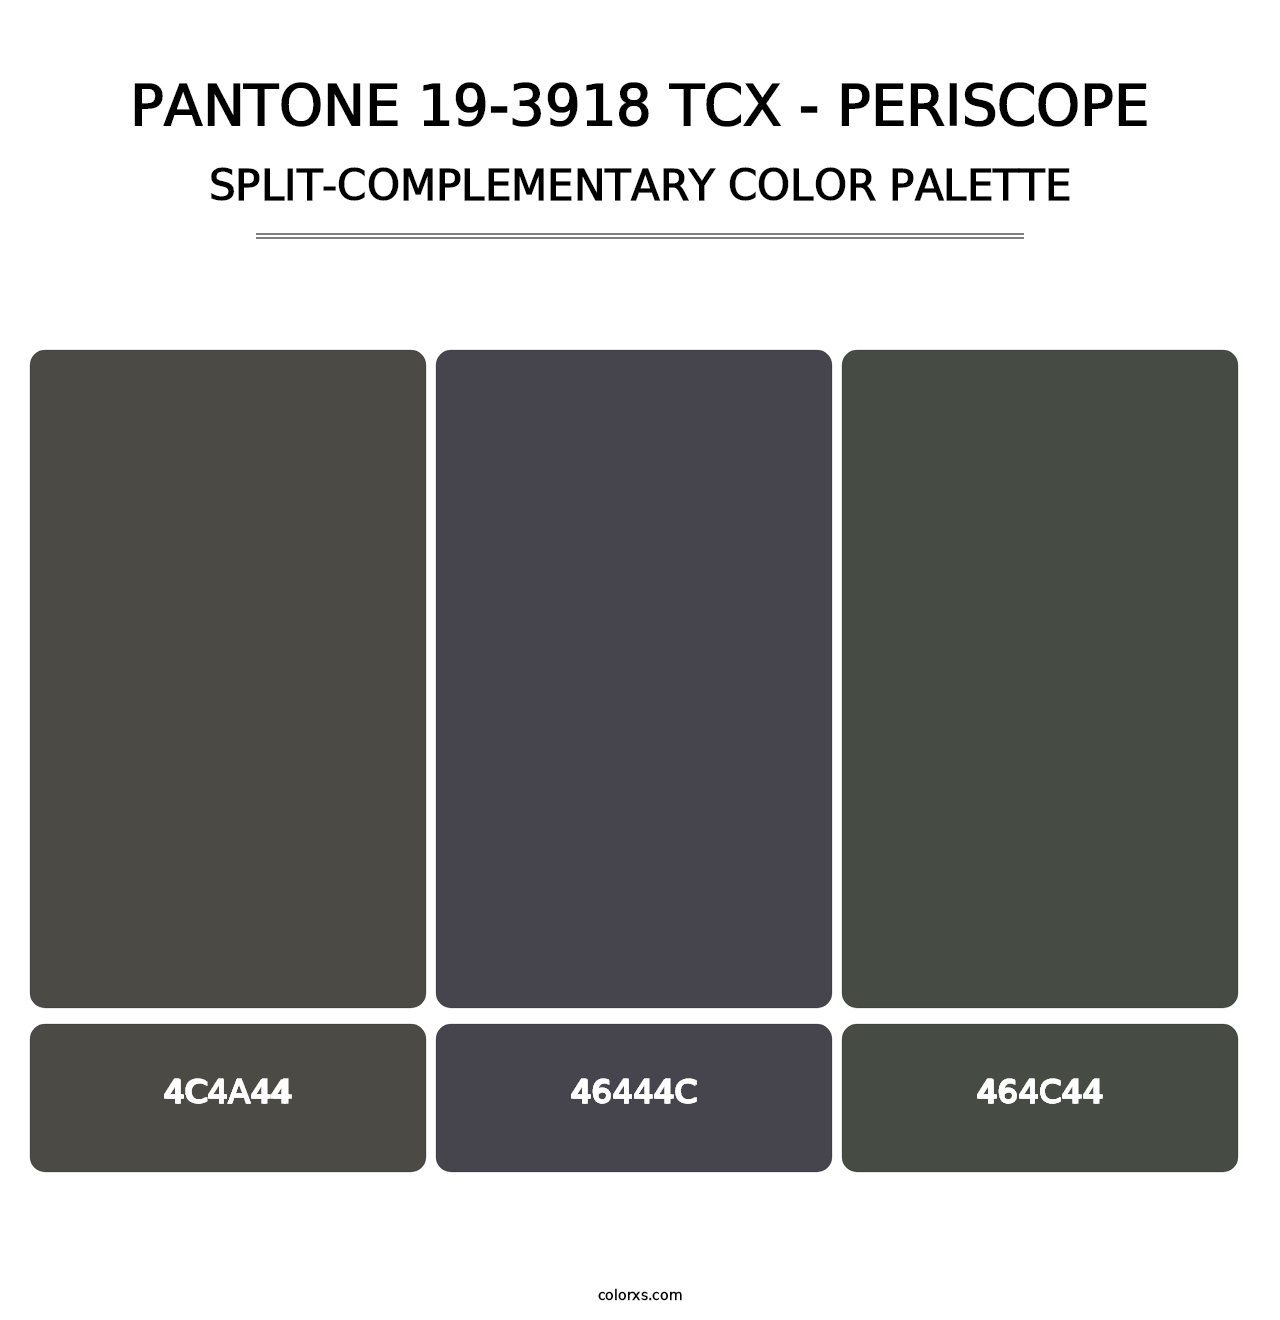 PANTONE 19-3918 TCX - Periscope - Split-Complementary Color Palette